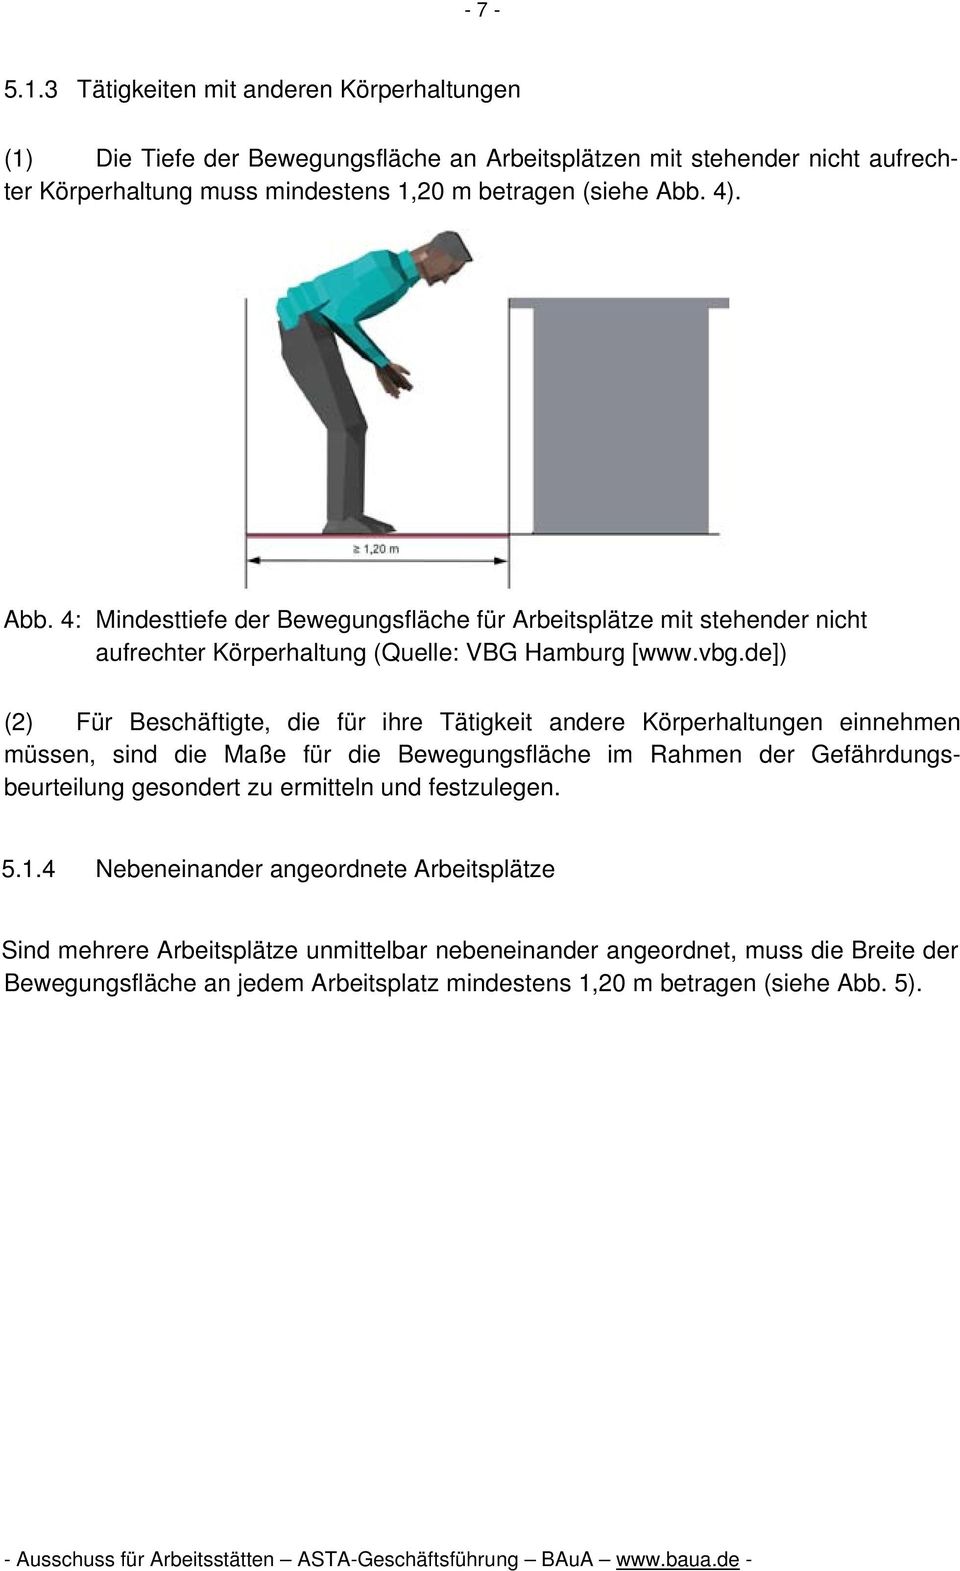 Abb. 4: Mindesttiefe der Bewegungsfläche für Arbeitsplätze mit stehender nicht aufrechter Körperhaltung (Quelle: VBG Hamburg [www.vbg.